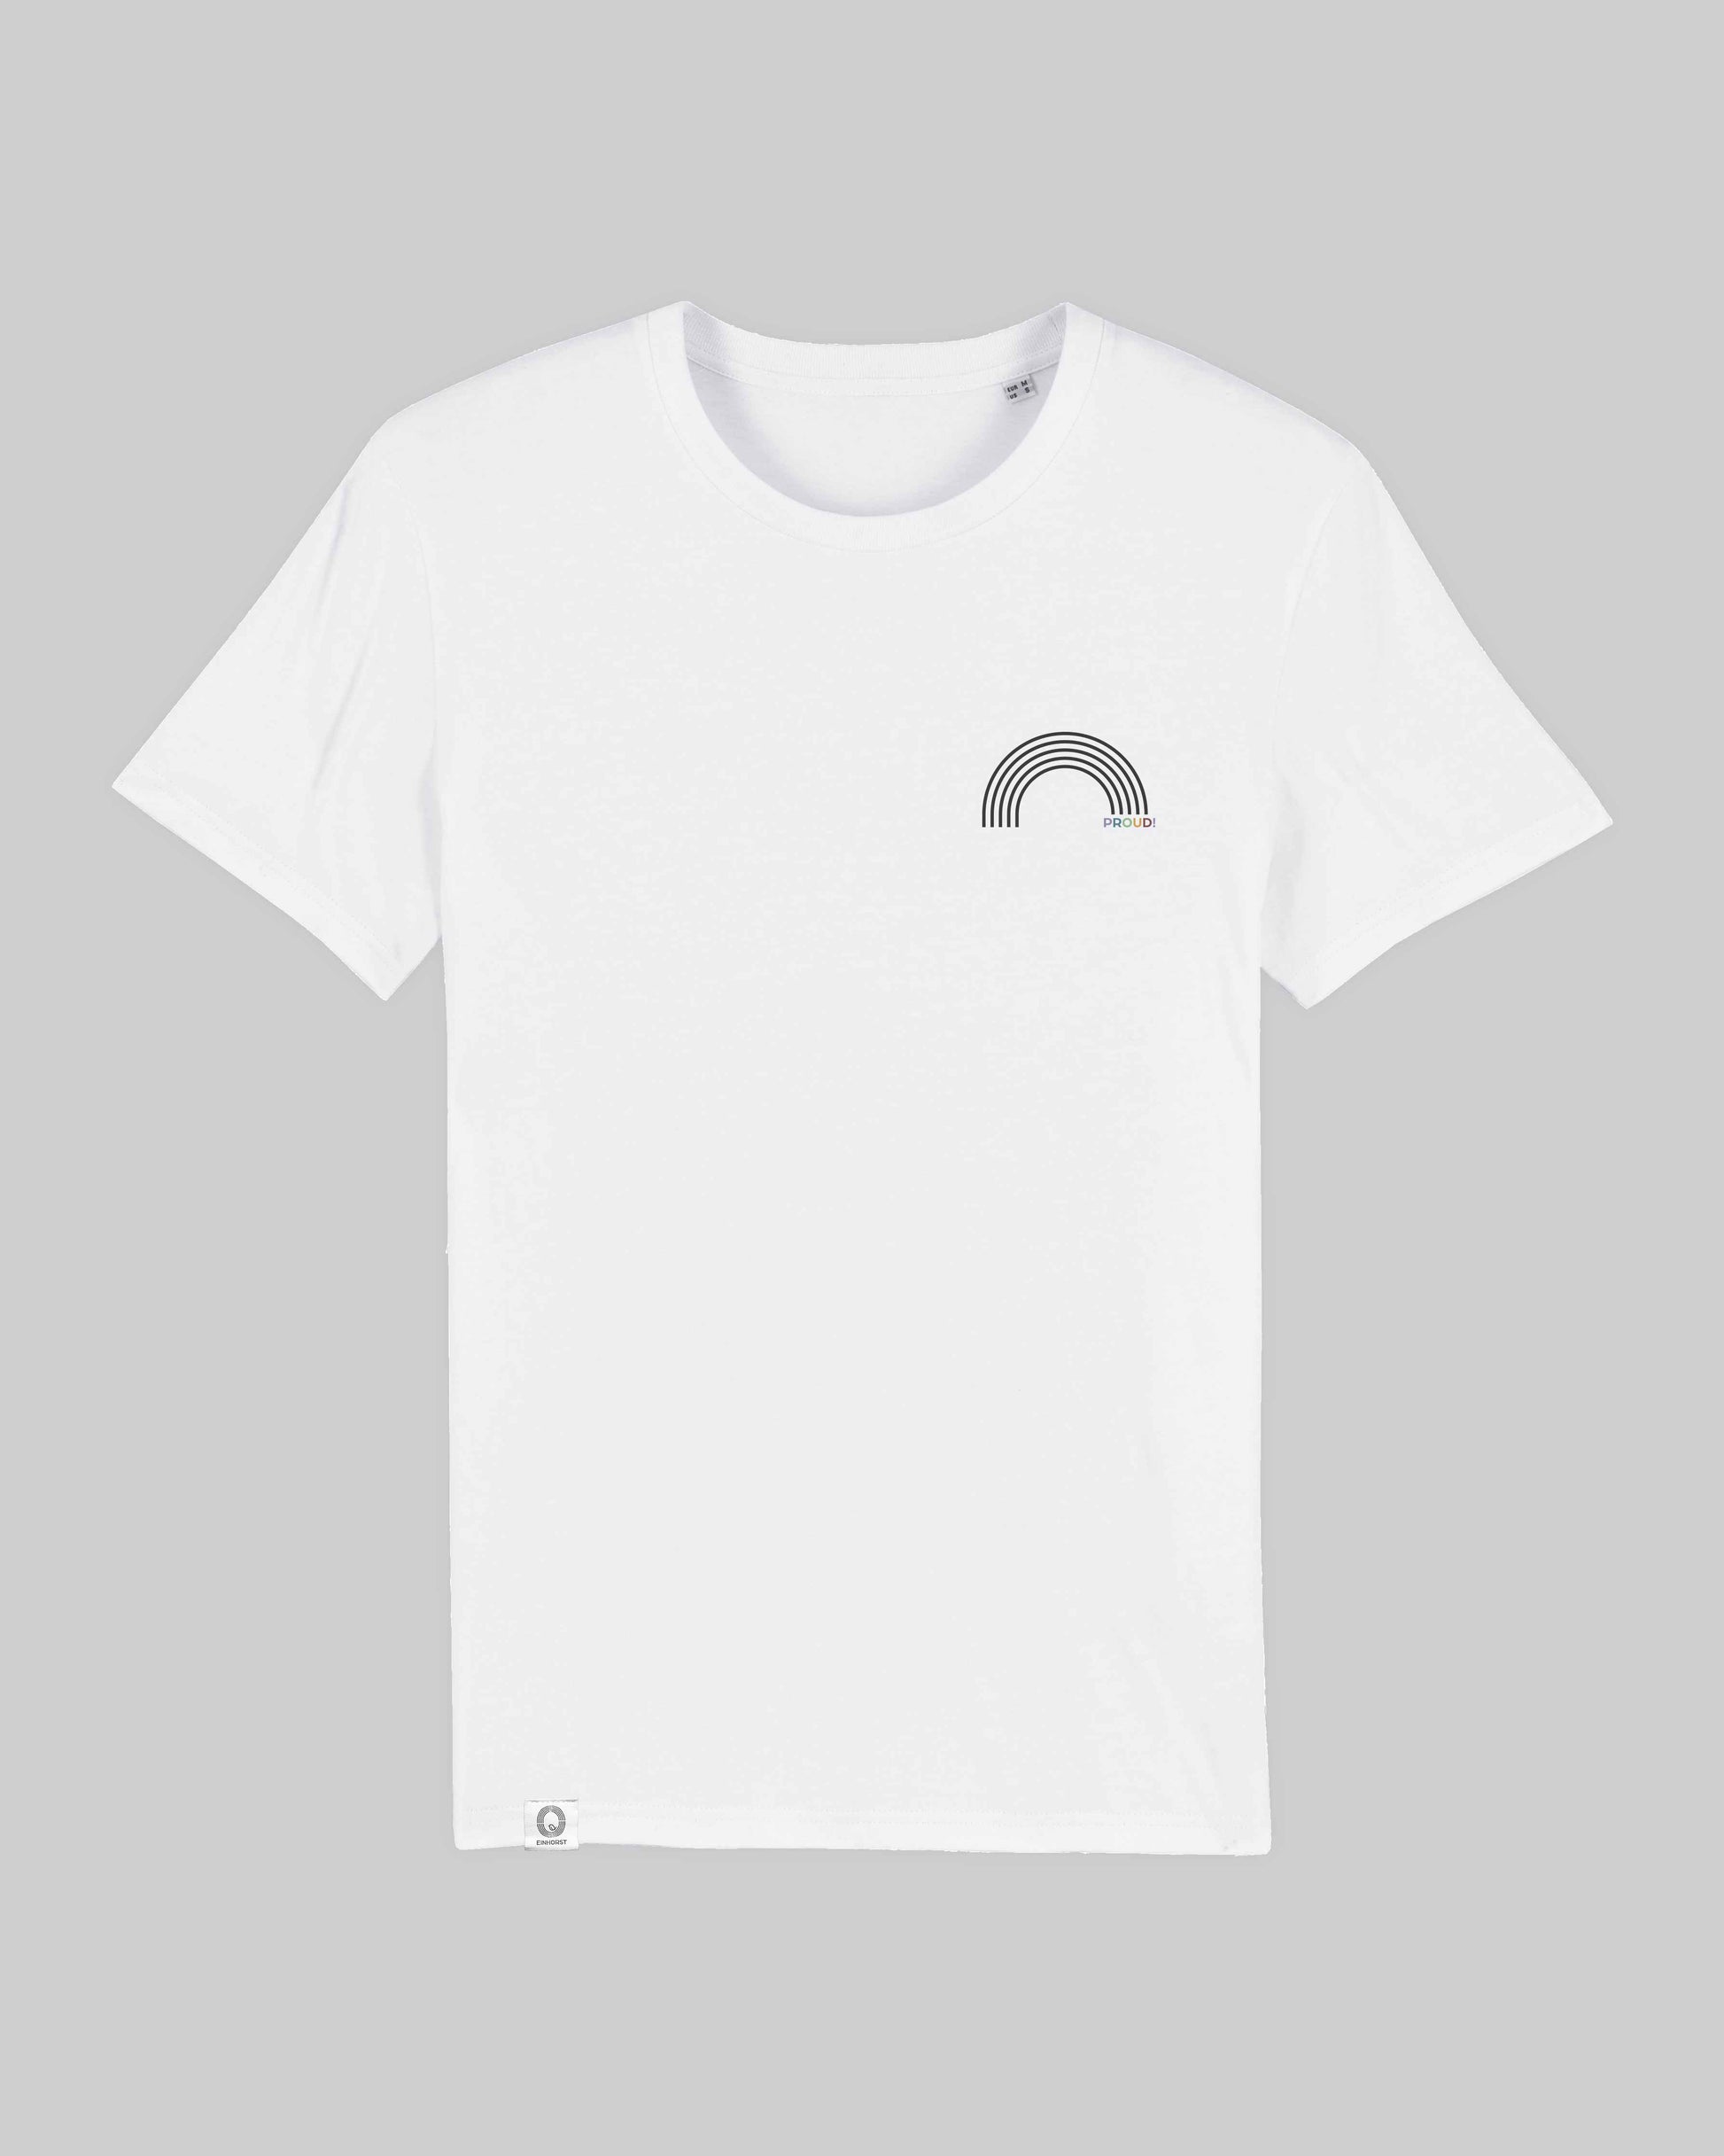 EINHORST® unisex Organic Shirt in Weiß mit dem Motiv "proud Regenbogen" in der Kombination schwarzer Regenbogen mit bunter Schrift, Bild von Shirt von vorne